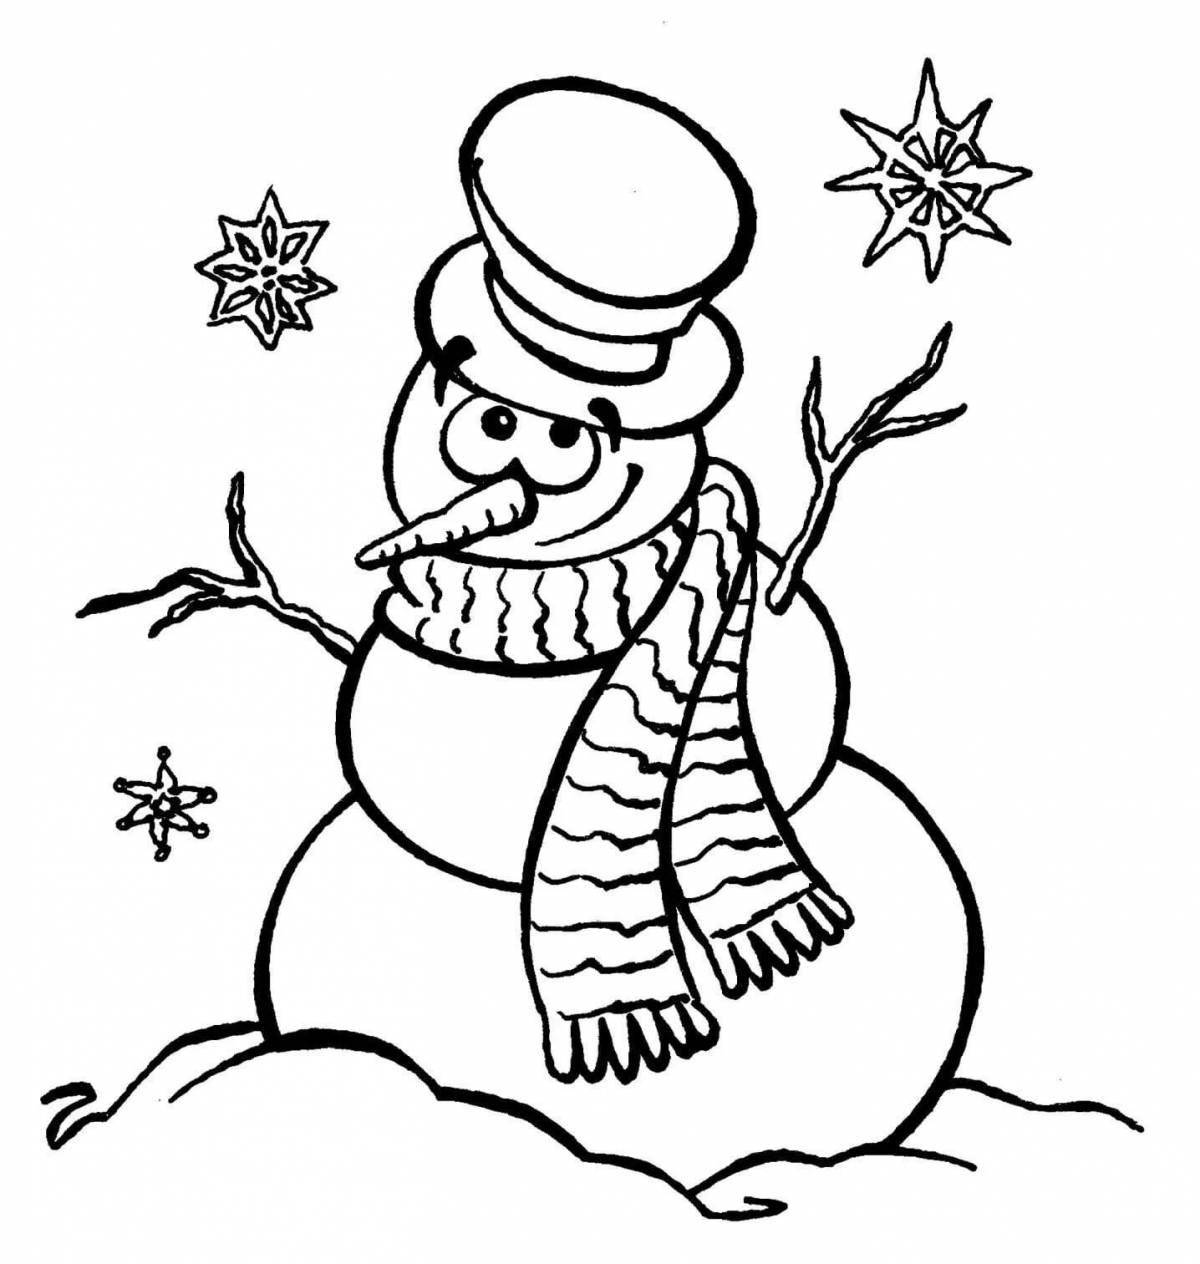 Adorable snowman coloring card